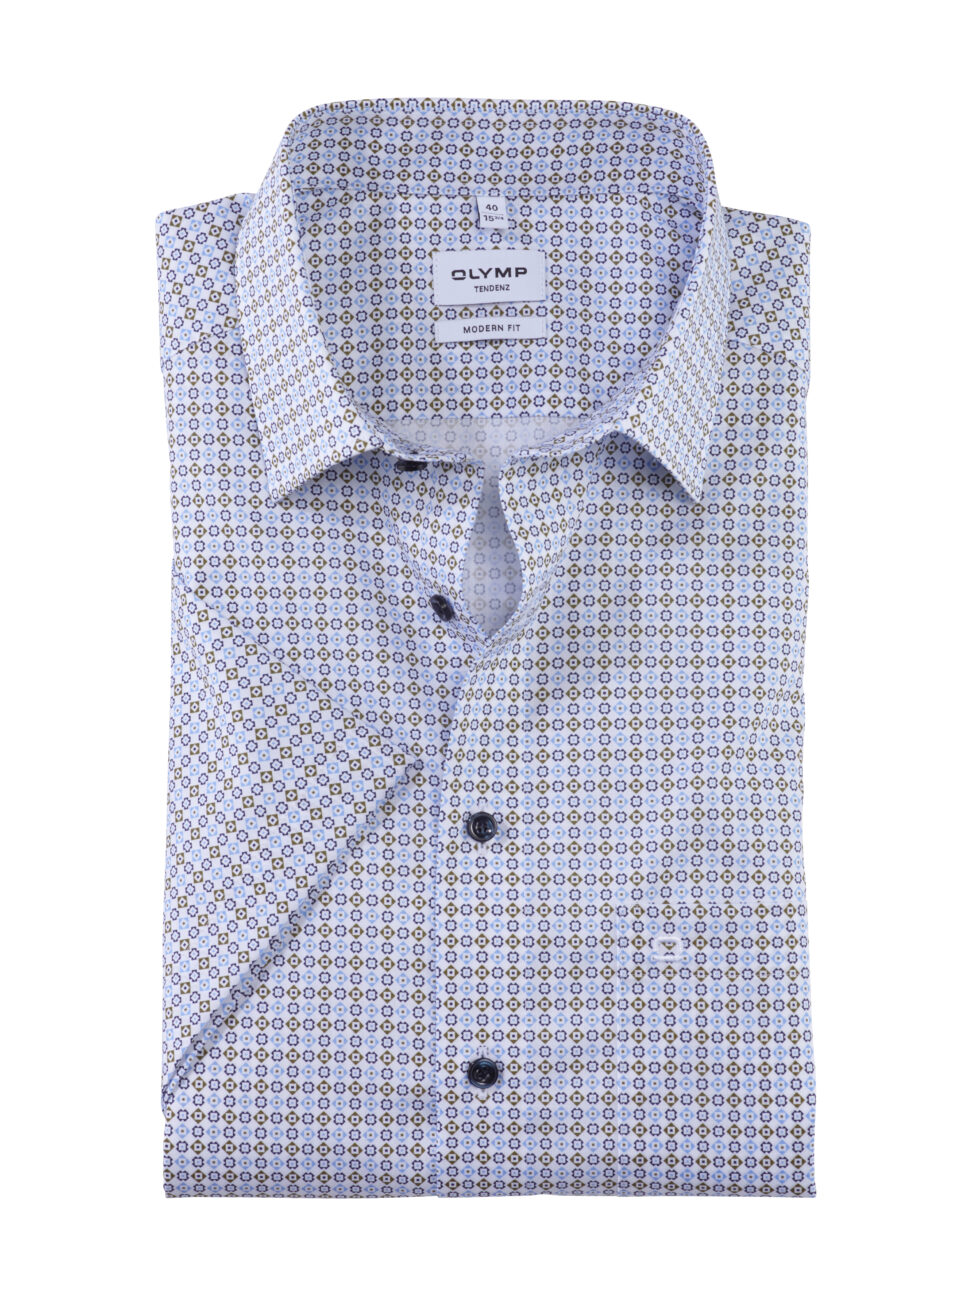 Koszula OLYMP Tendenz, modern fit, Błękitne wzorki / New Kent /  86263246 krótki rękaw